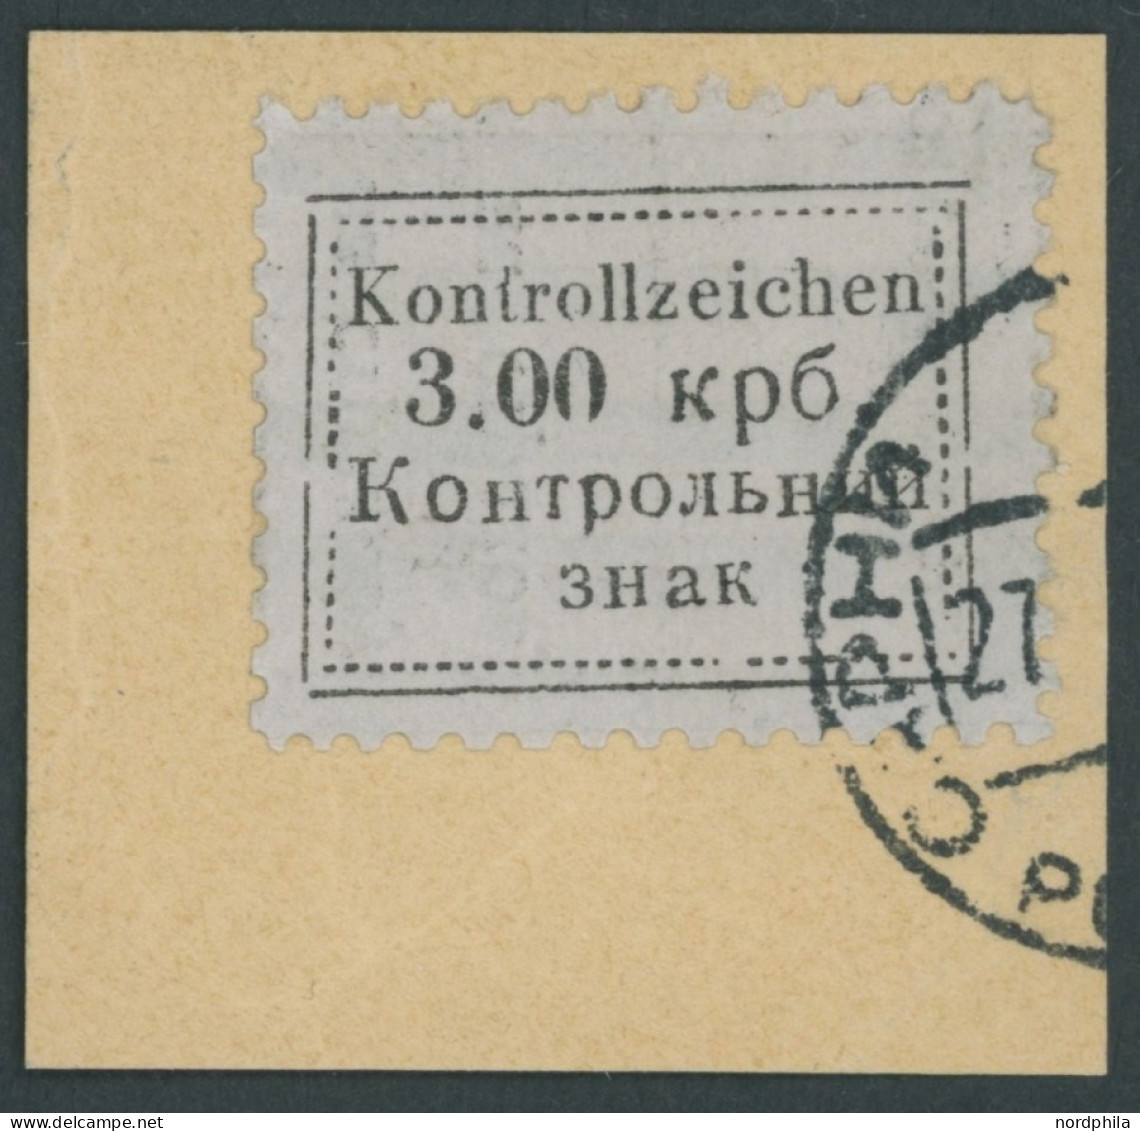 UKRAINE 3 BrfStk, 1941, 3 Krb. Schwarz Auf Mattgrau, Prachtbriefstück, Gepr. Keiler Und Fotoattest Zirath, Mi. (2200.-) - Besetzungen 1938-45